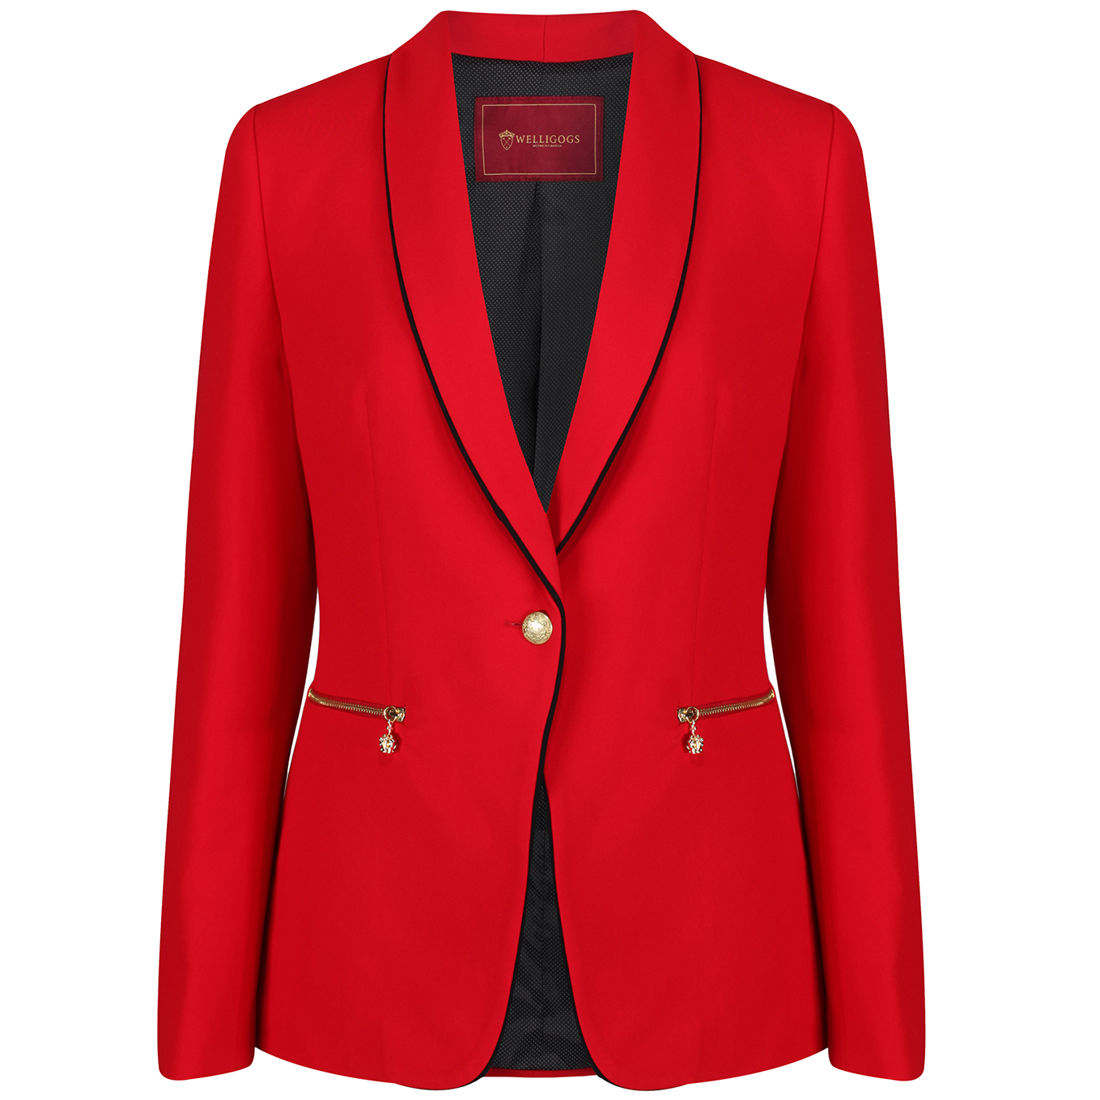 WG Women's Kuoni Jacket in Red